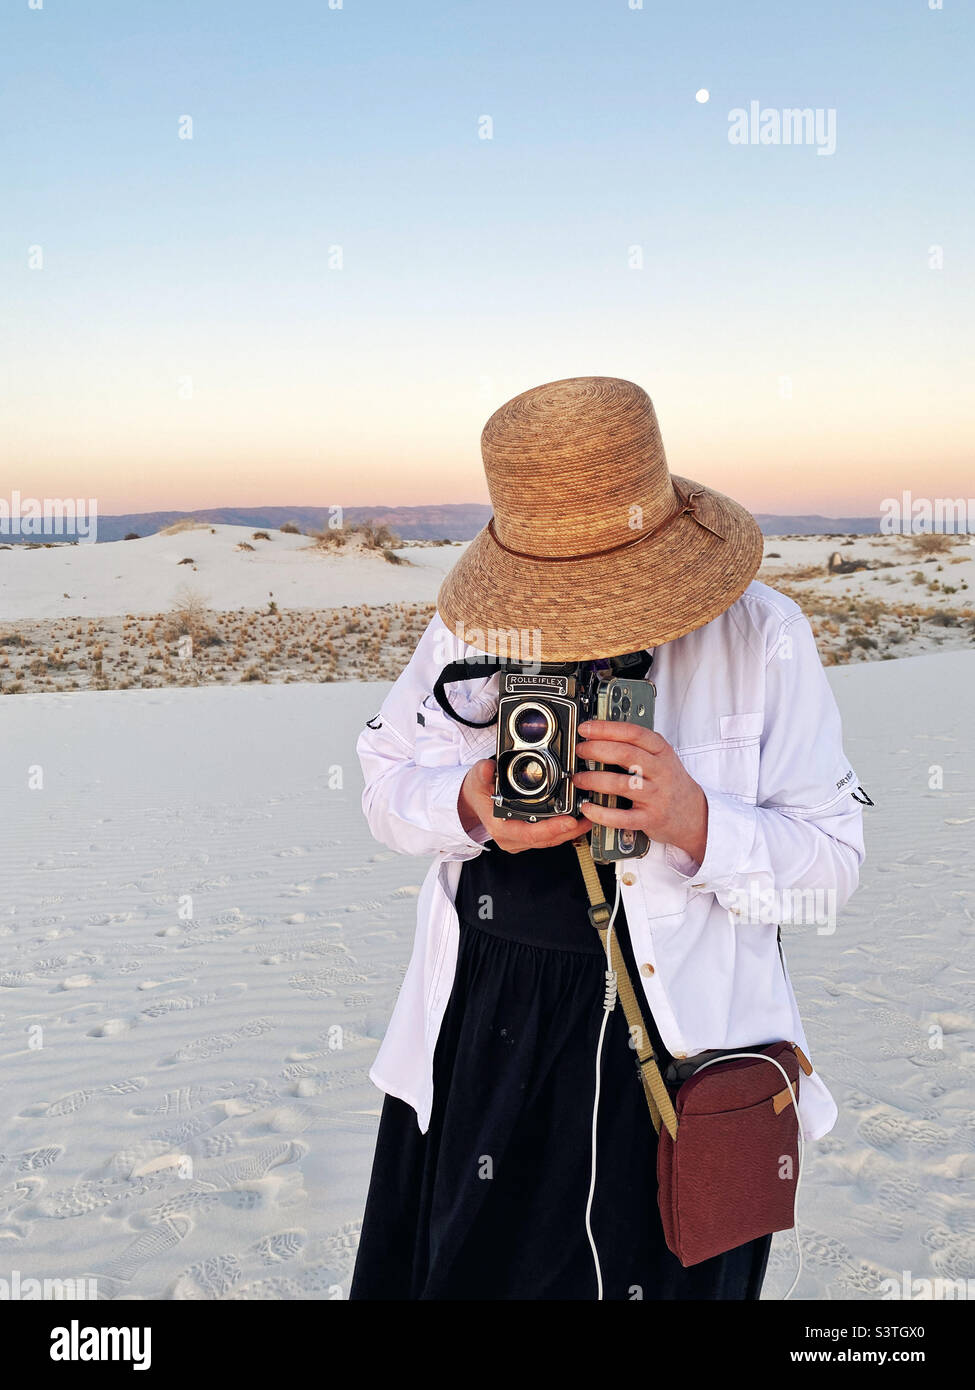 Fotografo con macchina fotografica analogica che fotografa durante il tramonto al monumento nazionale di sabbia bianca nel nuovo messico Foto Stock